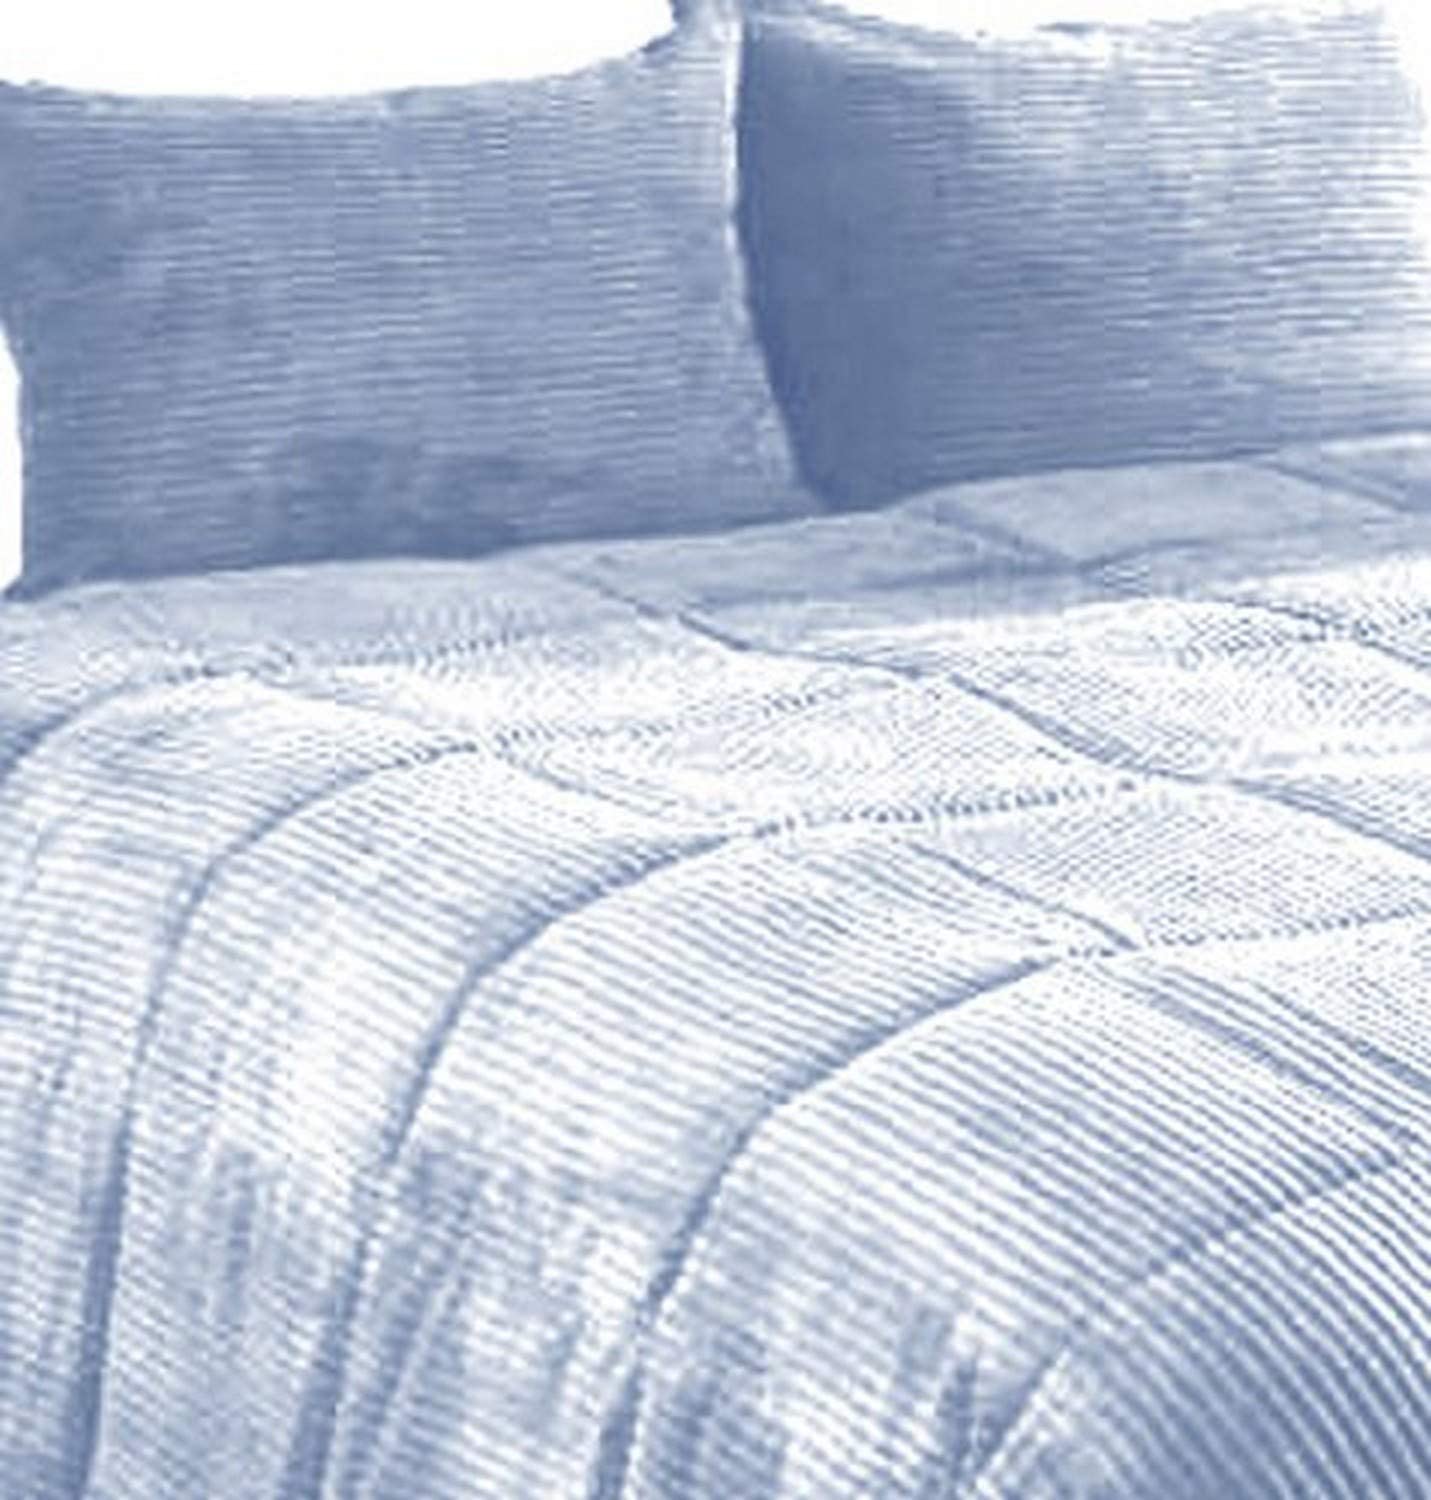 Woolino Wool Comforter Queen Duvet Washable Full/Queen Size 88x88 